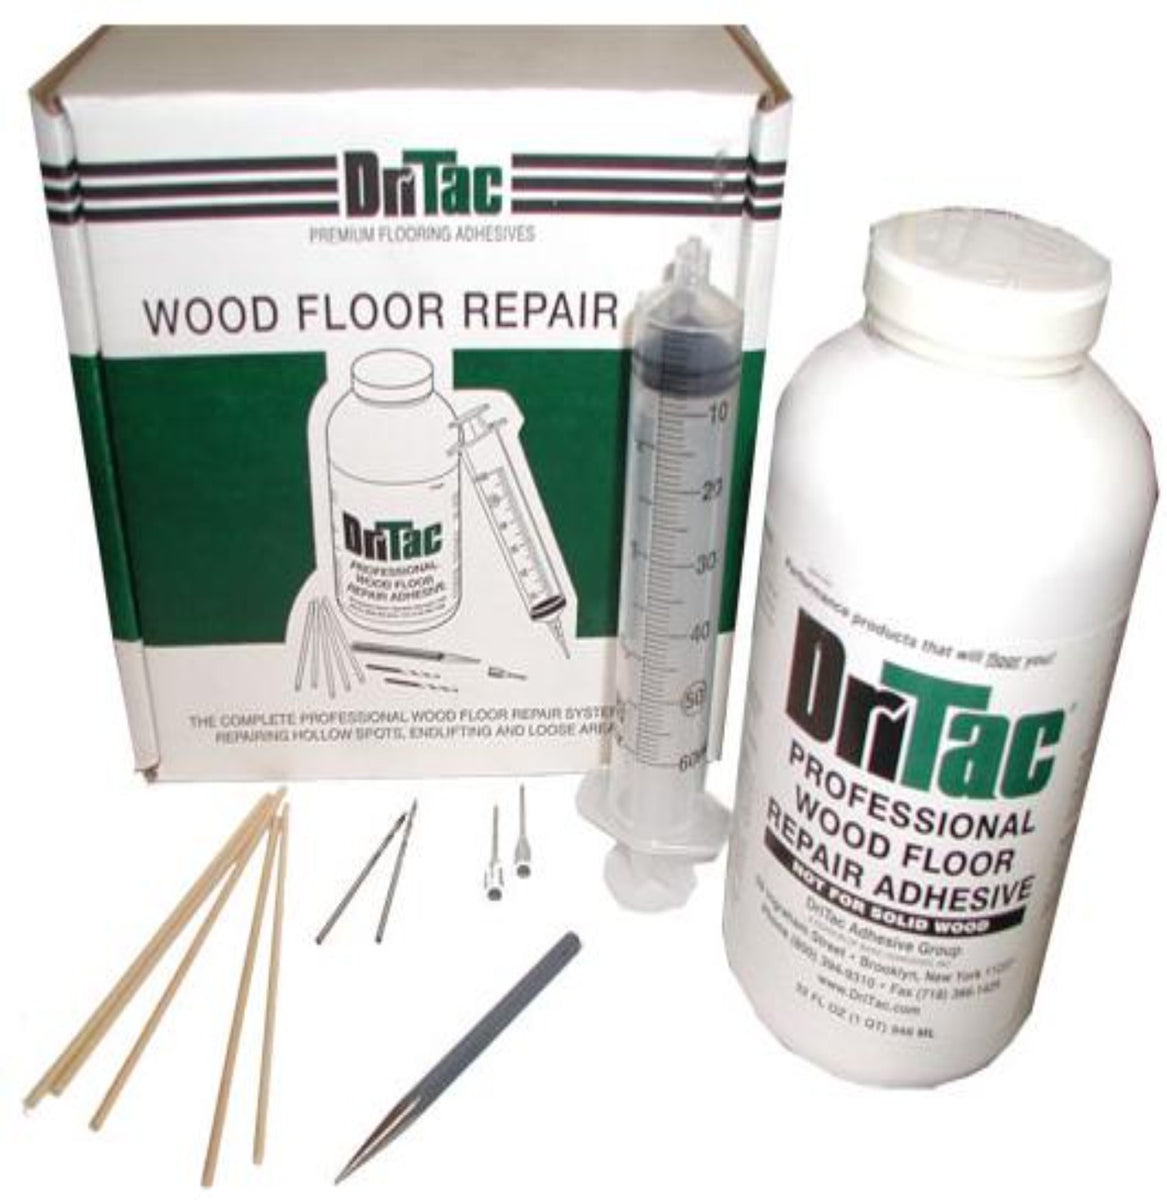 DriTac Wood Floor Repair Kit RS-1 –